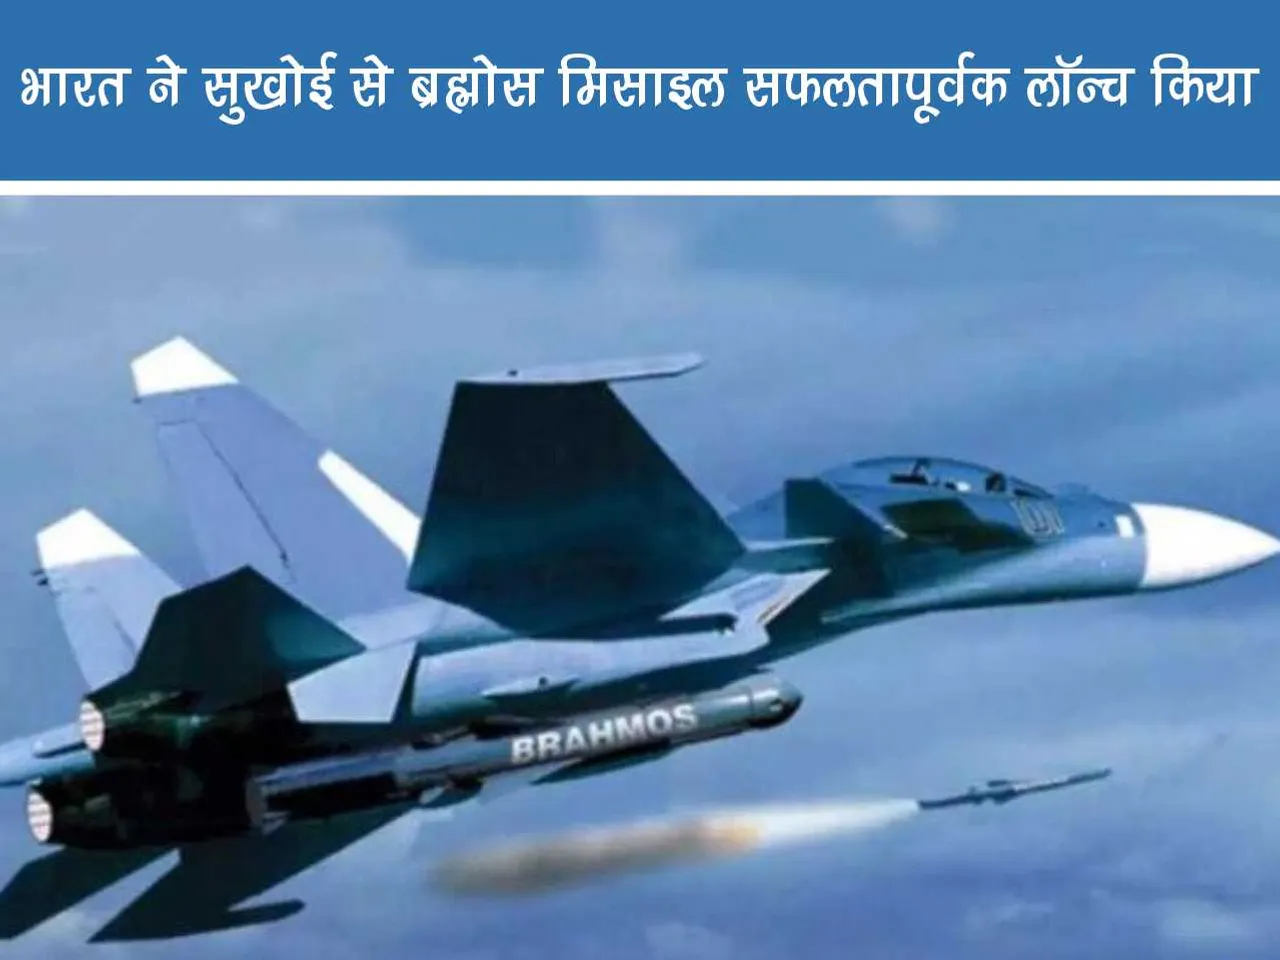 Sukhoi firing Brahmos missile